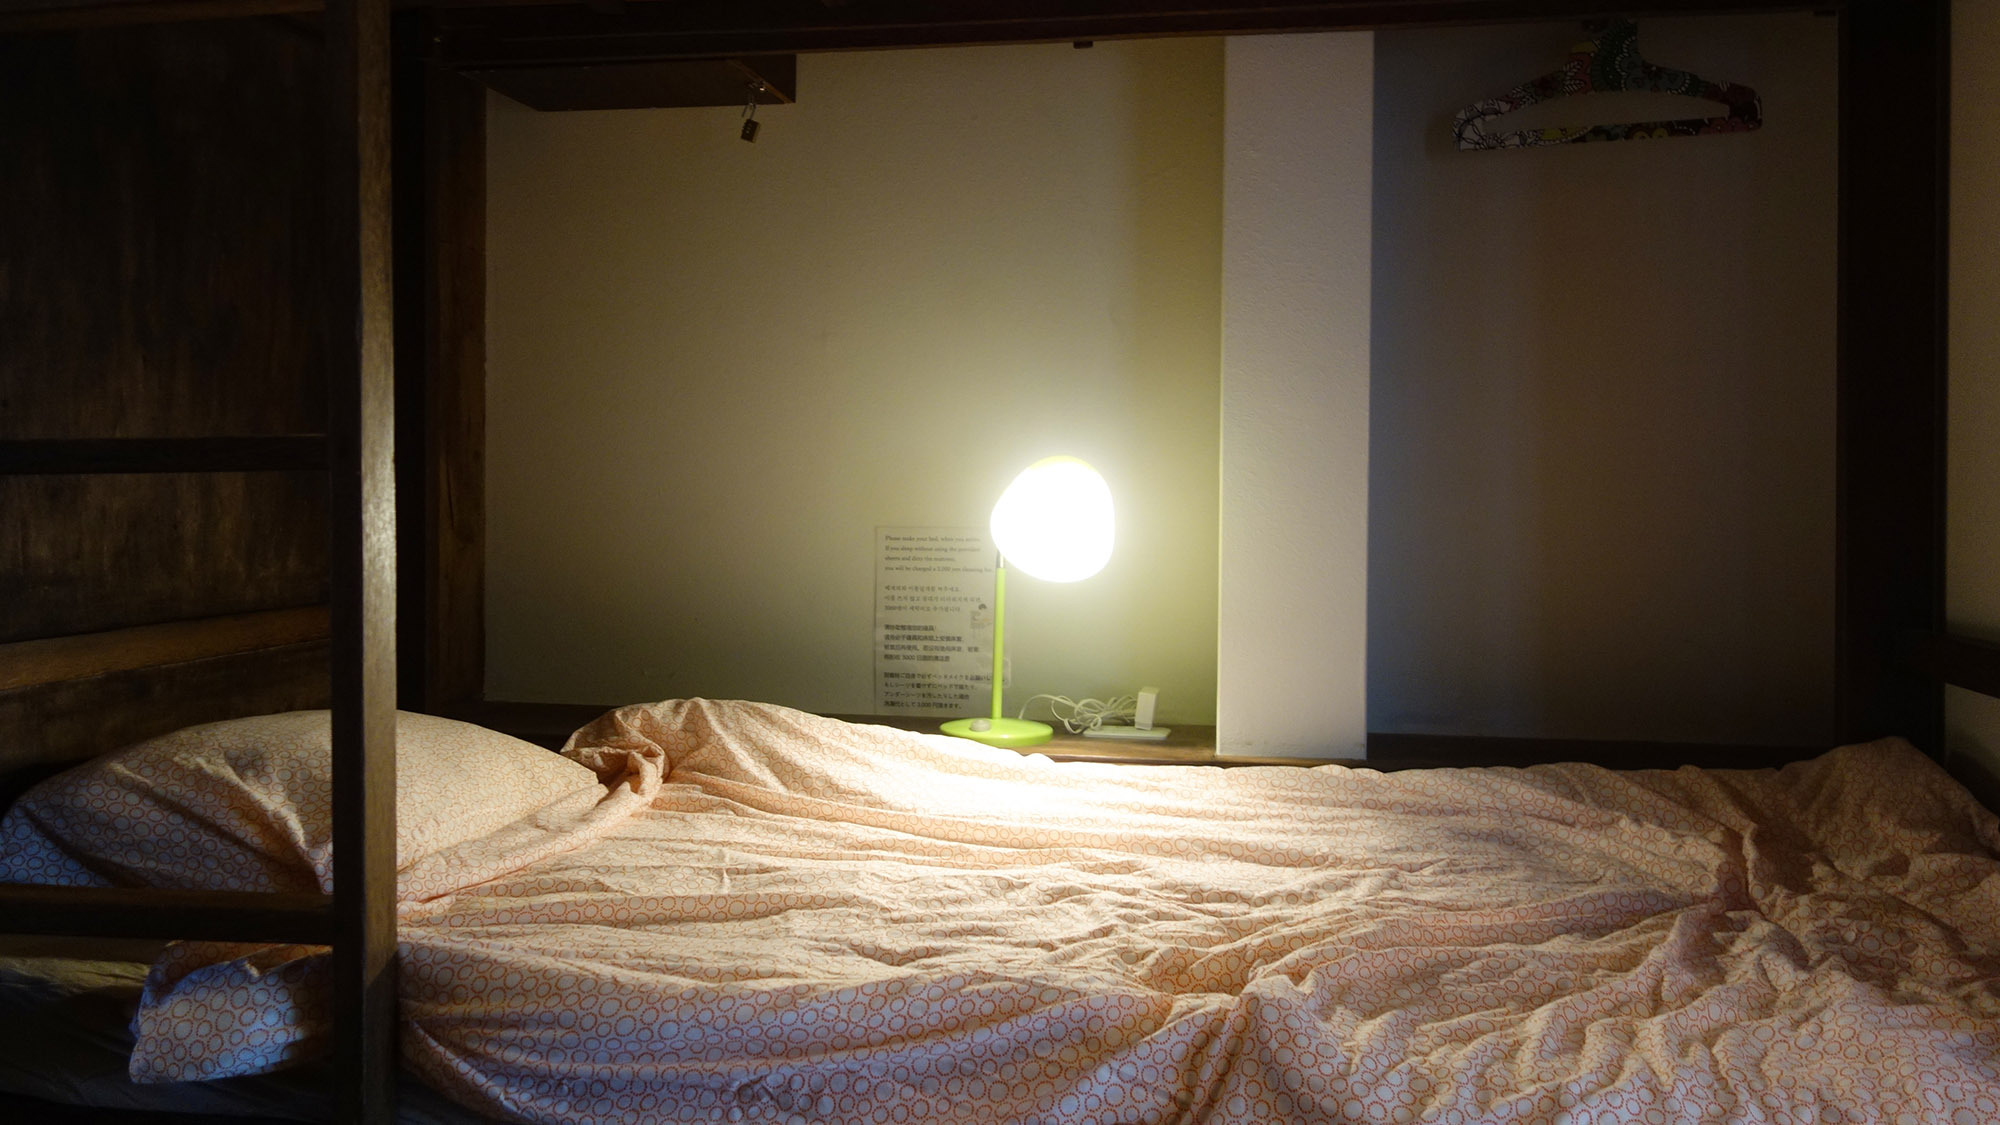 ・【ベッド】ベッド内には照明を設置。カーテンを閉めればプライベート空間も確保できます